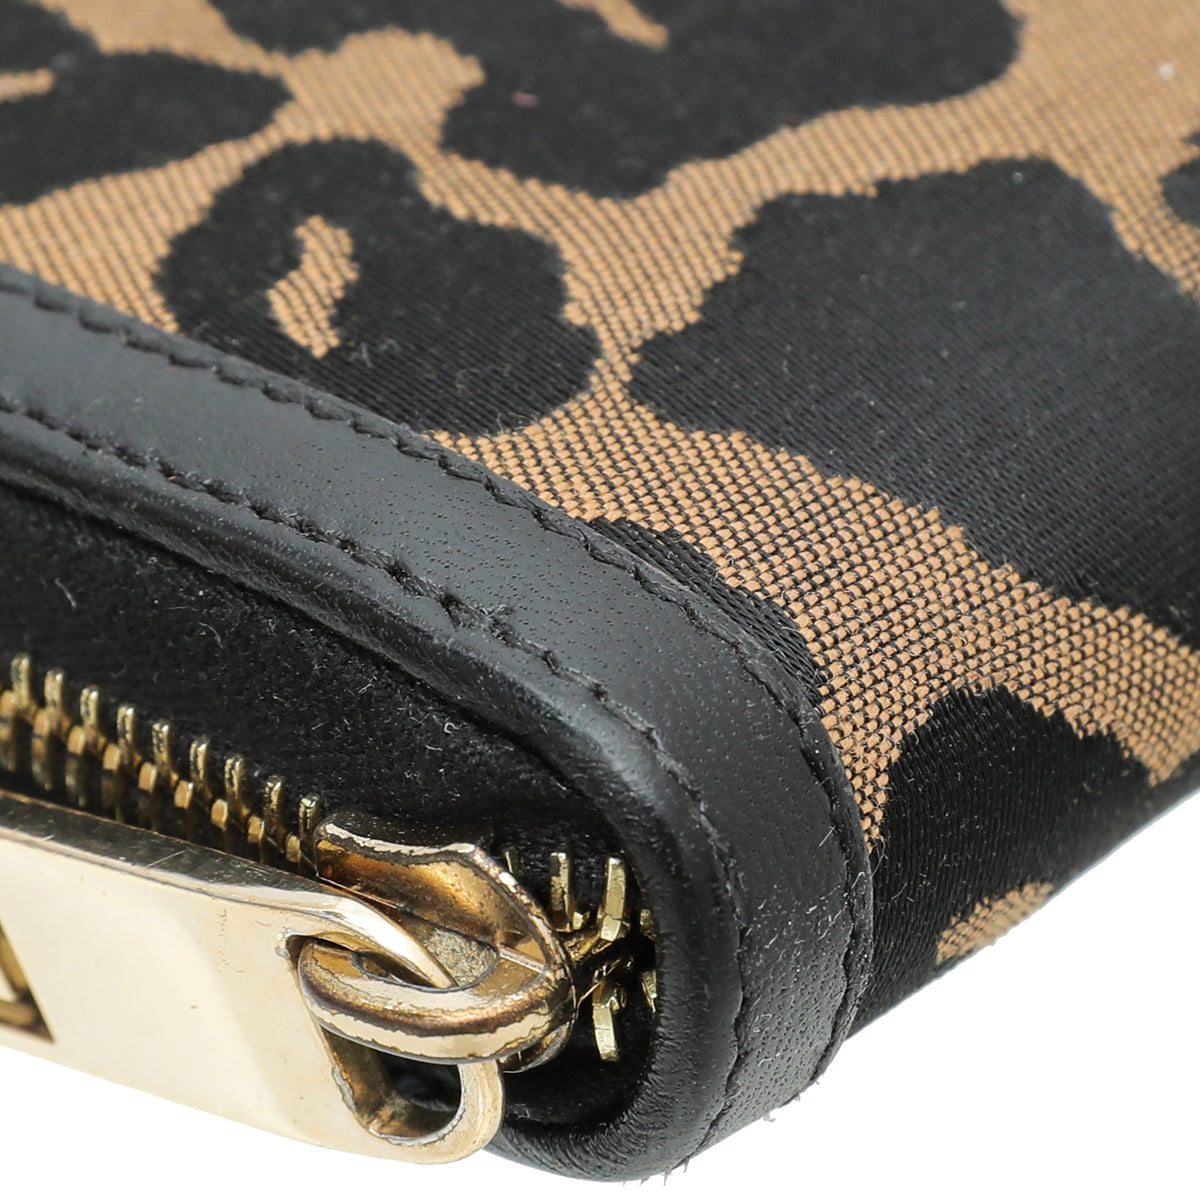 Fendi Bicolor Leopard Print Zip Around Wallet